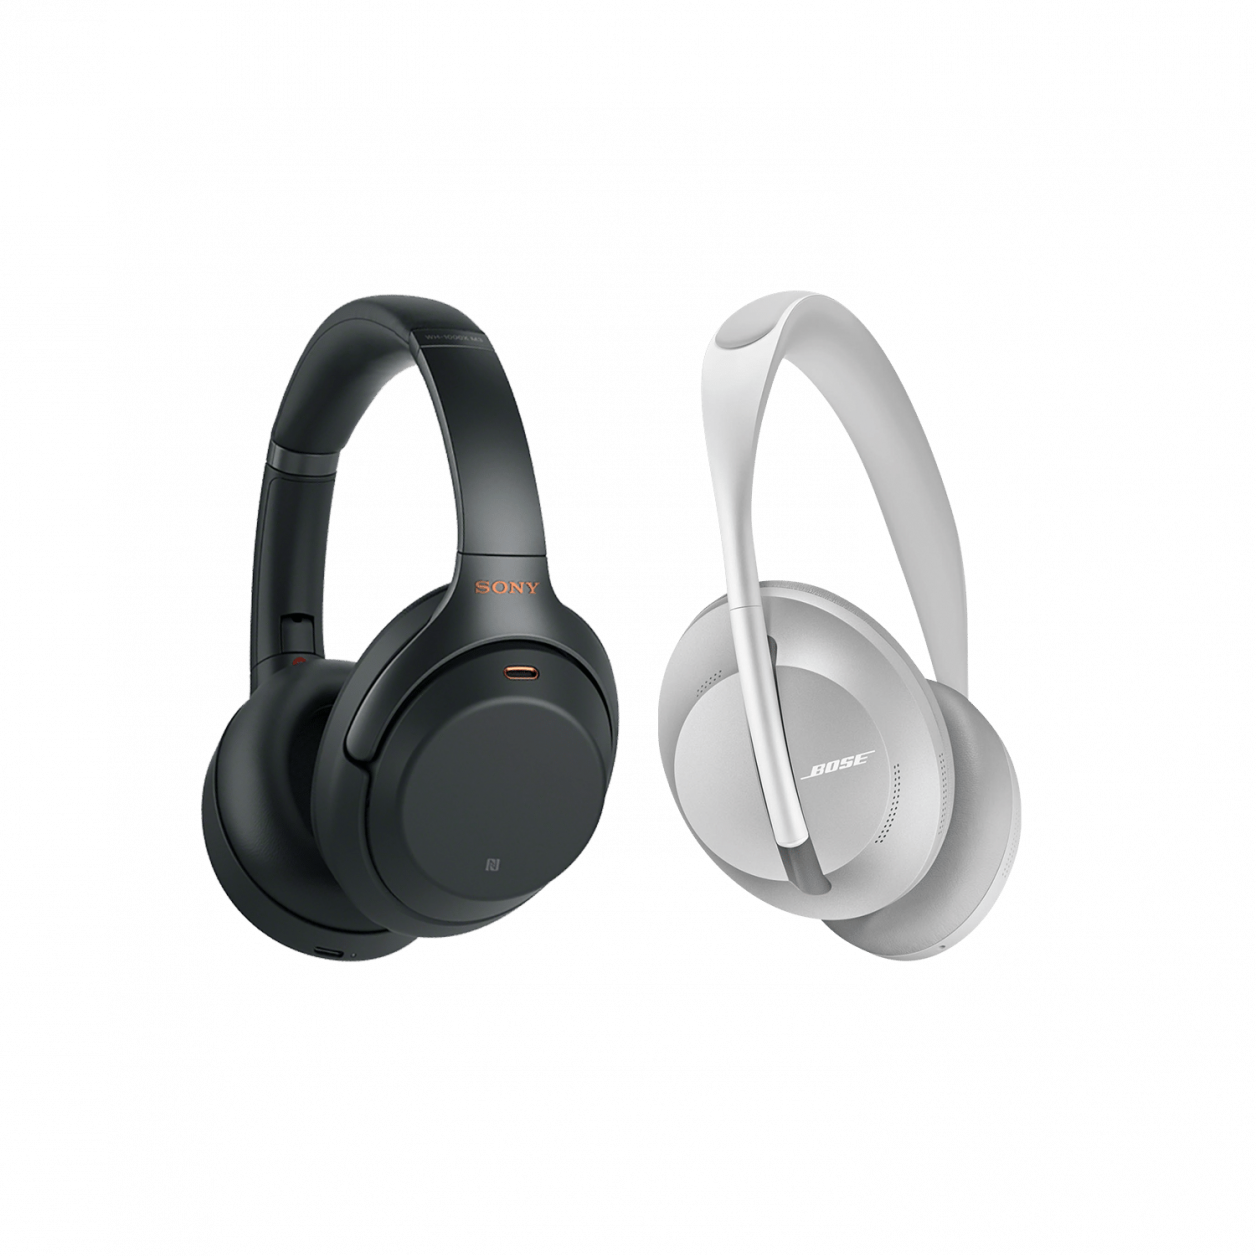 Comparatif : Sony WH-1000X M3 vs Bose Noise Cancelling Headphones 700, lequel choisir ?